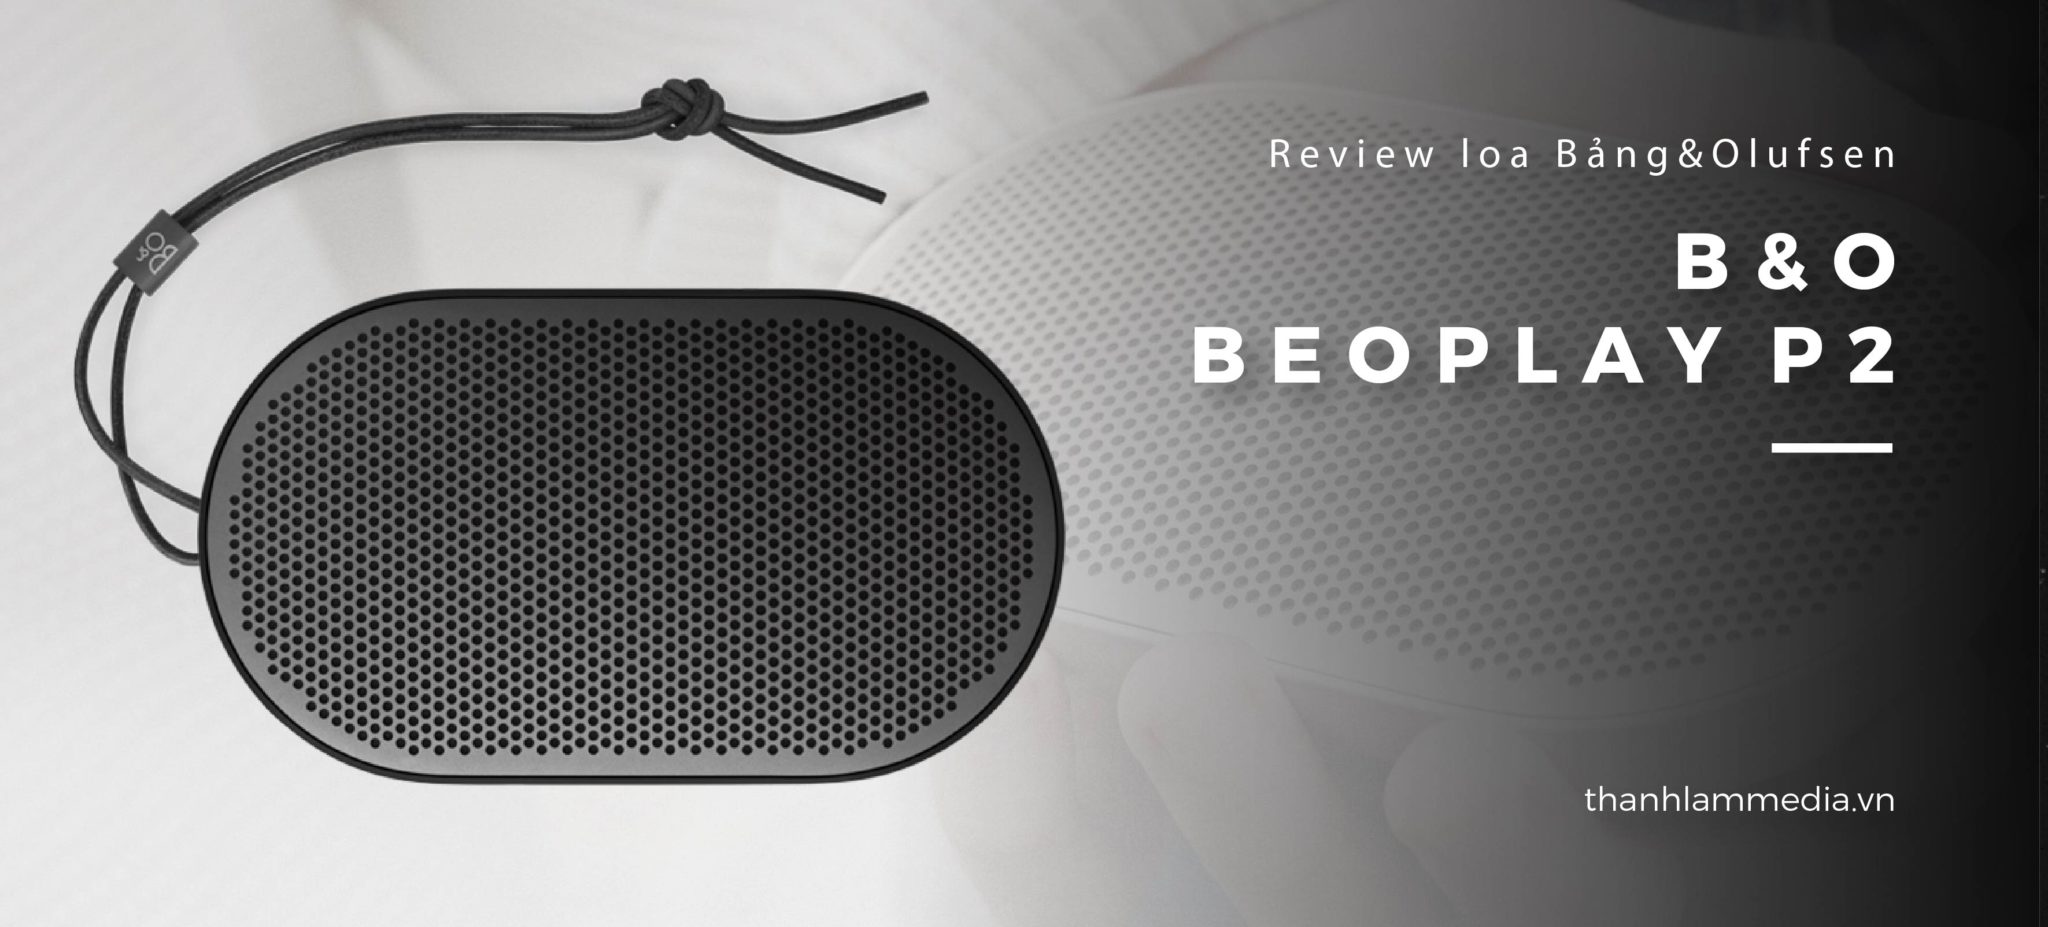 Loa B&O Beoplay P2: Thiết kế nhỏ gọn, âm thanh ấn tượng 6